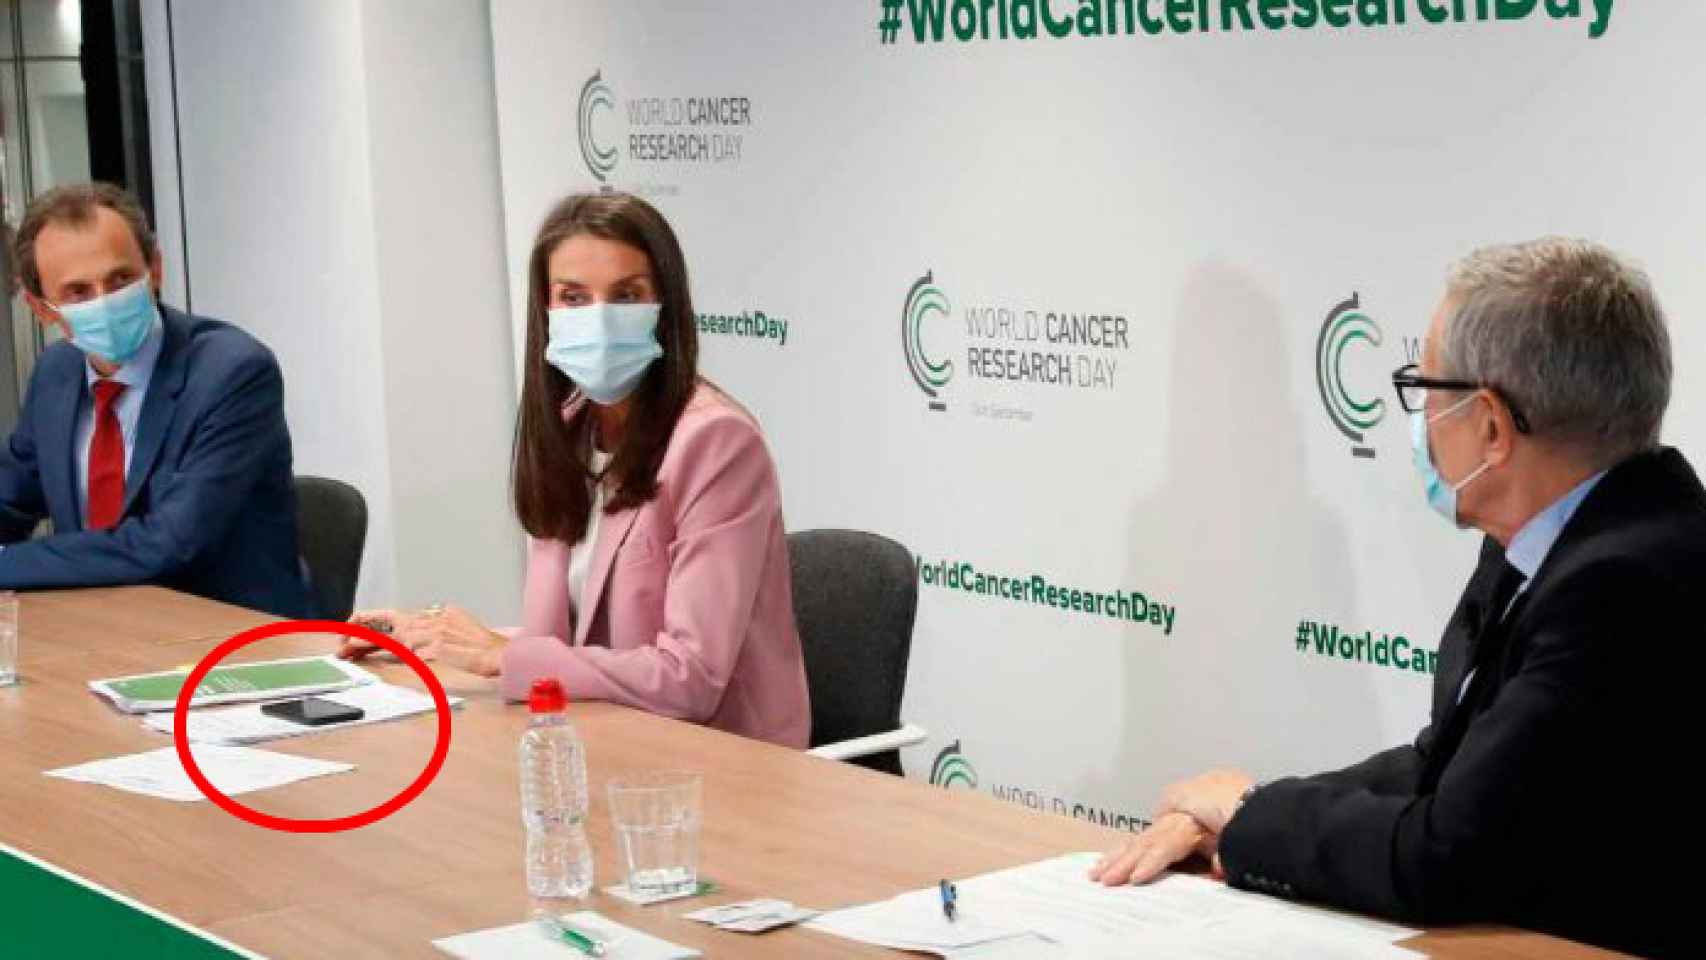 Letizia leyó sus palabras en inglés desde su smartphone el pasado 24 de septiembre en el acto contra el cáncer.